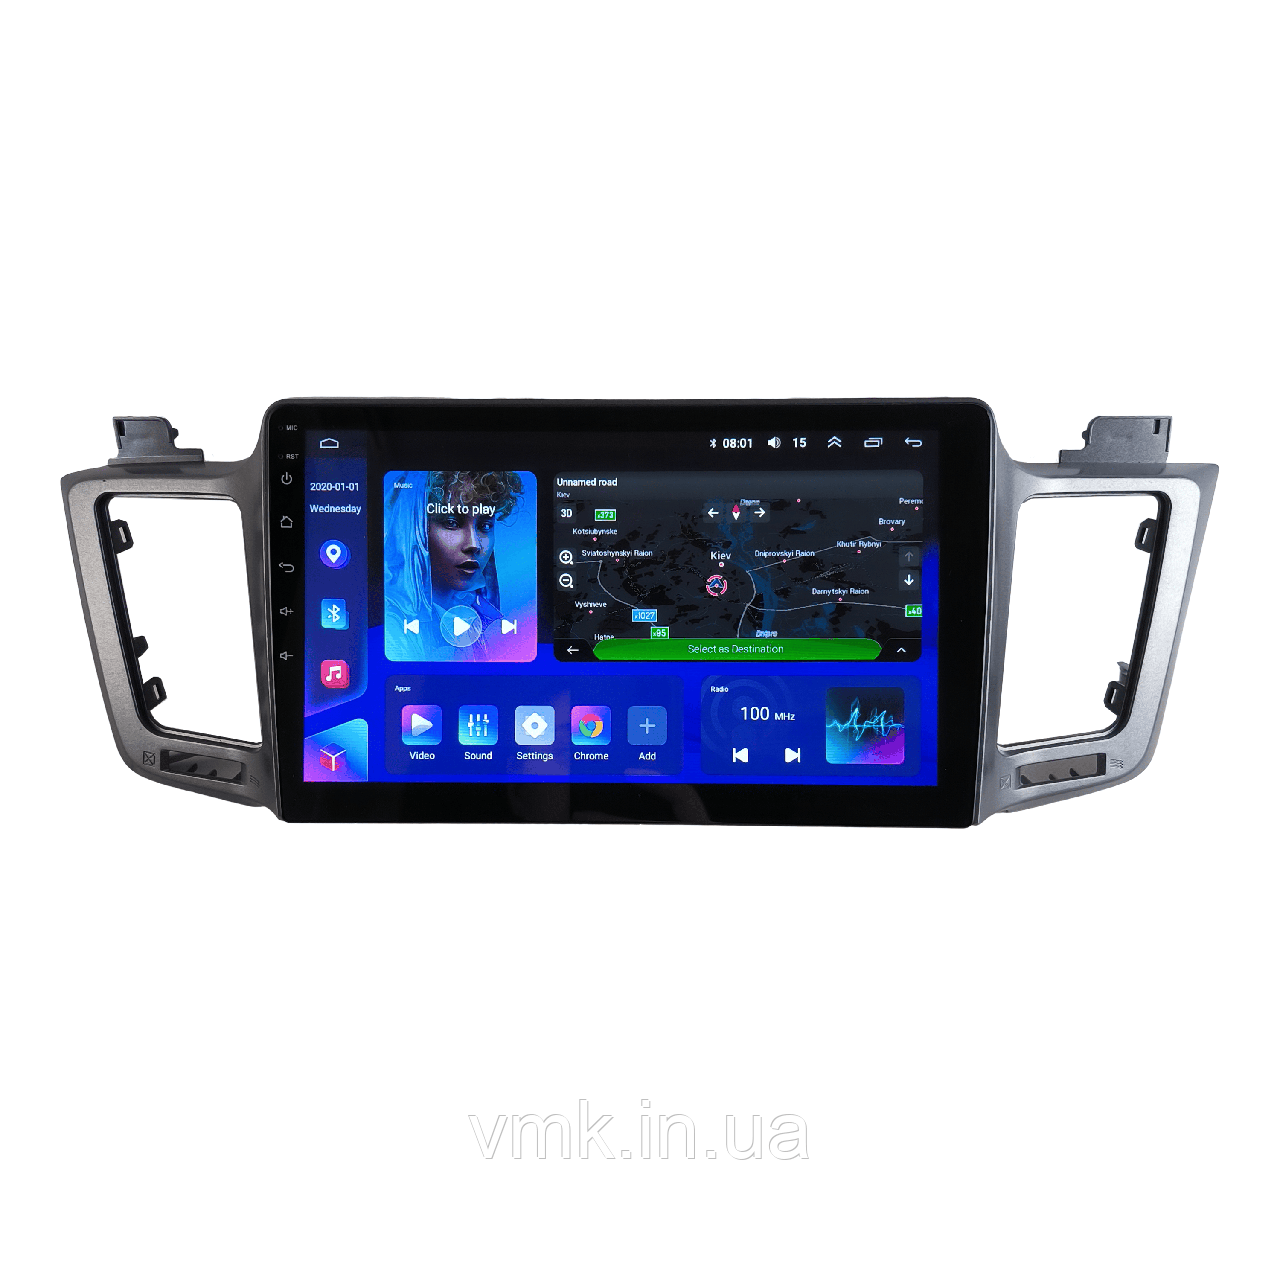 Штатна Магнітола Toyota Rav4 2012-2018 на Android Модель 7862-8octaTop-4G-DSP-CarPlay